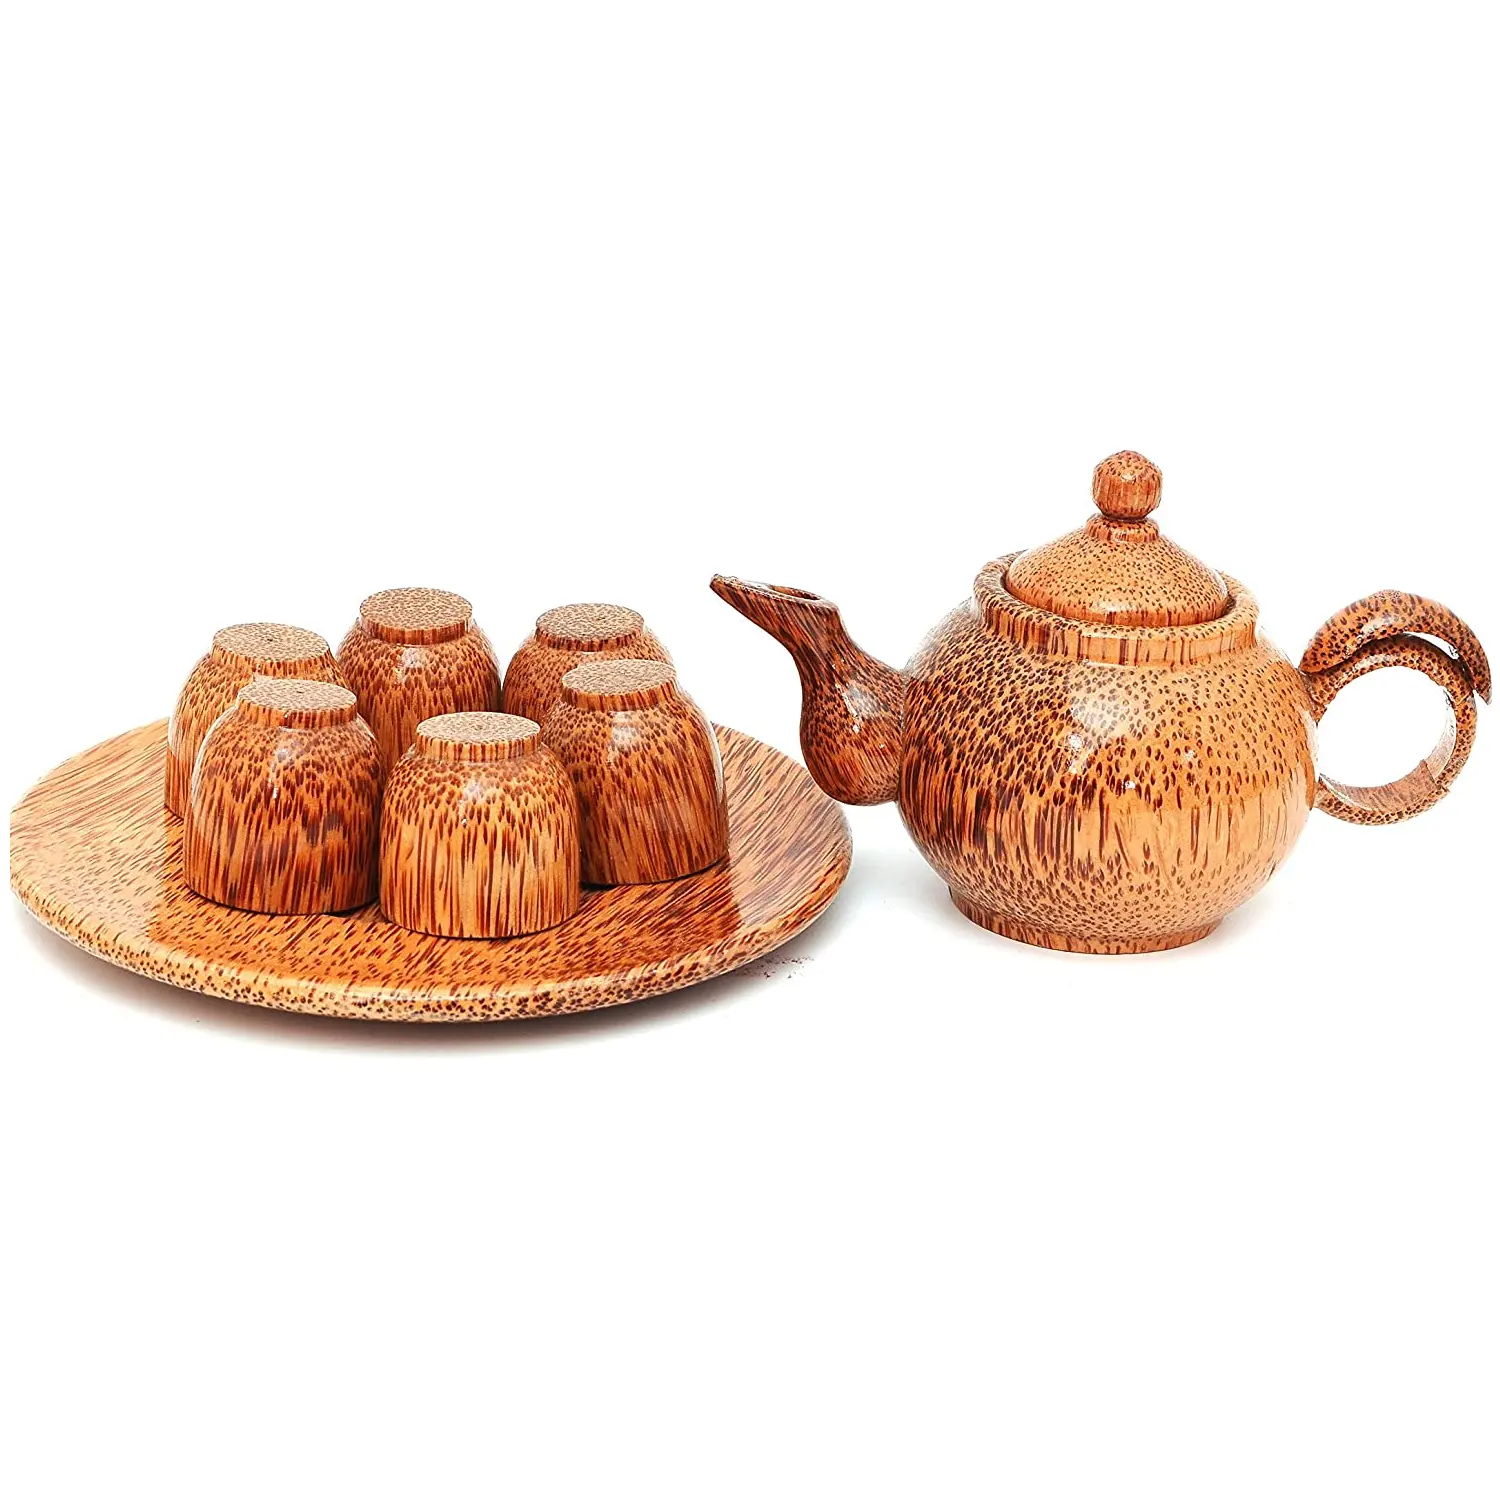 Tazza da tè in legno di cocco naturale per tutte le occasioni con disegni eleganti dal Vietnam 99GD